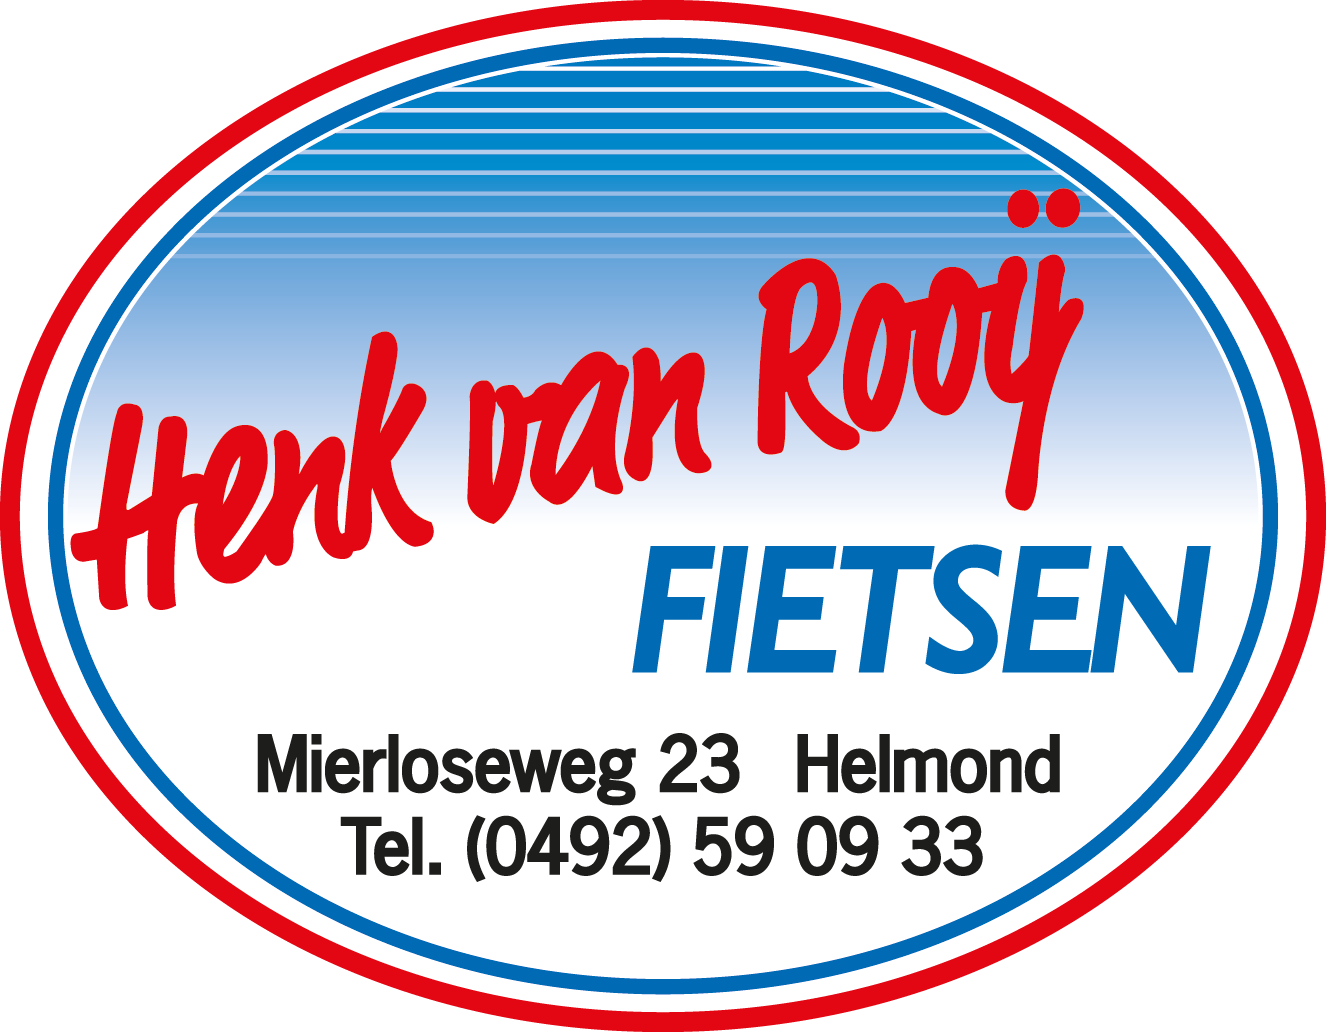 Henk van Rooij Fietsen